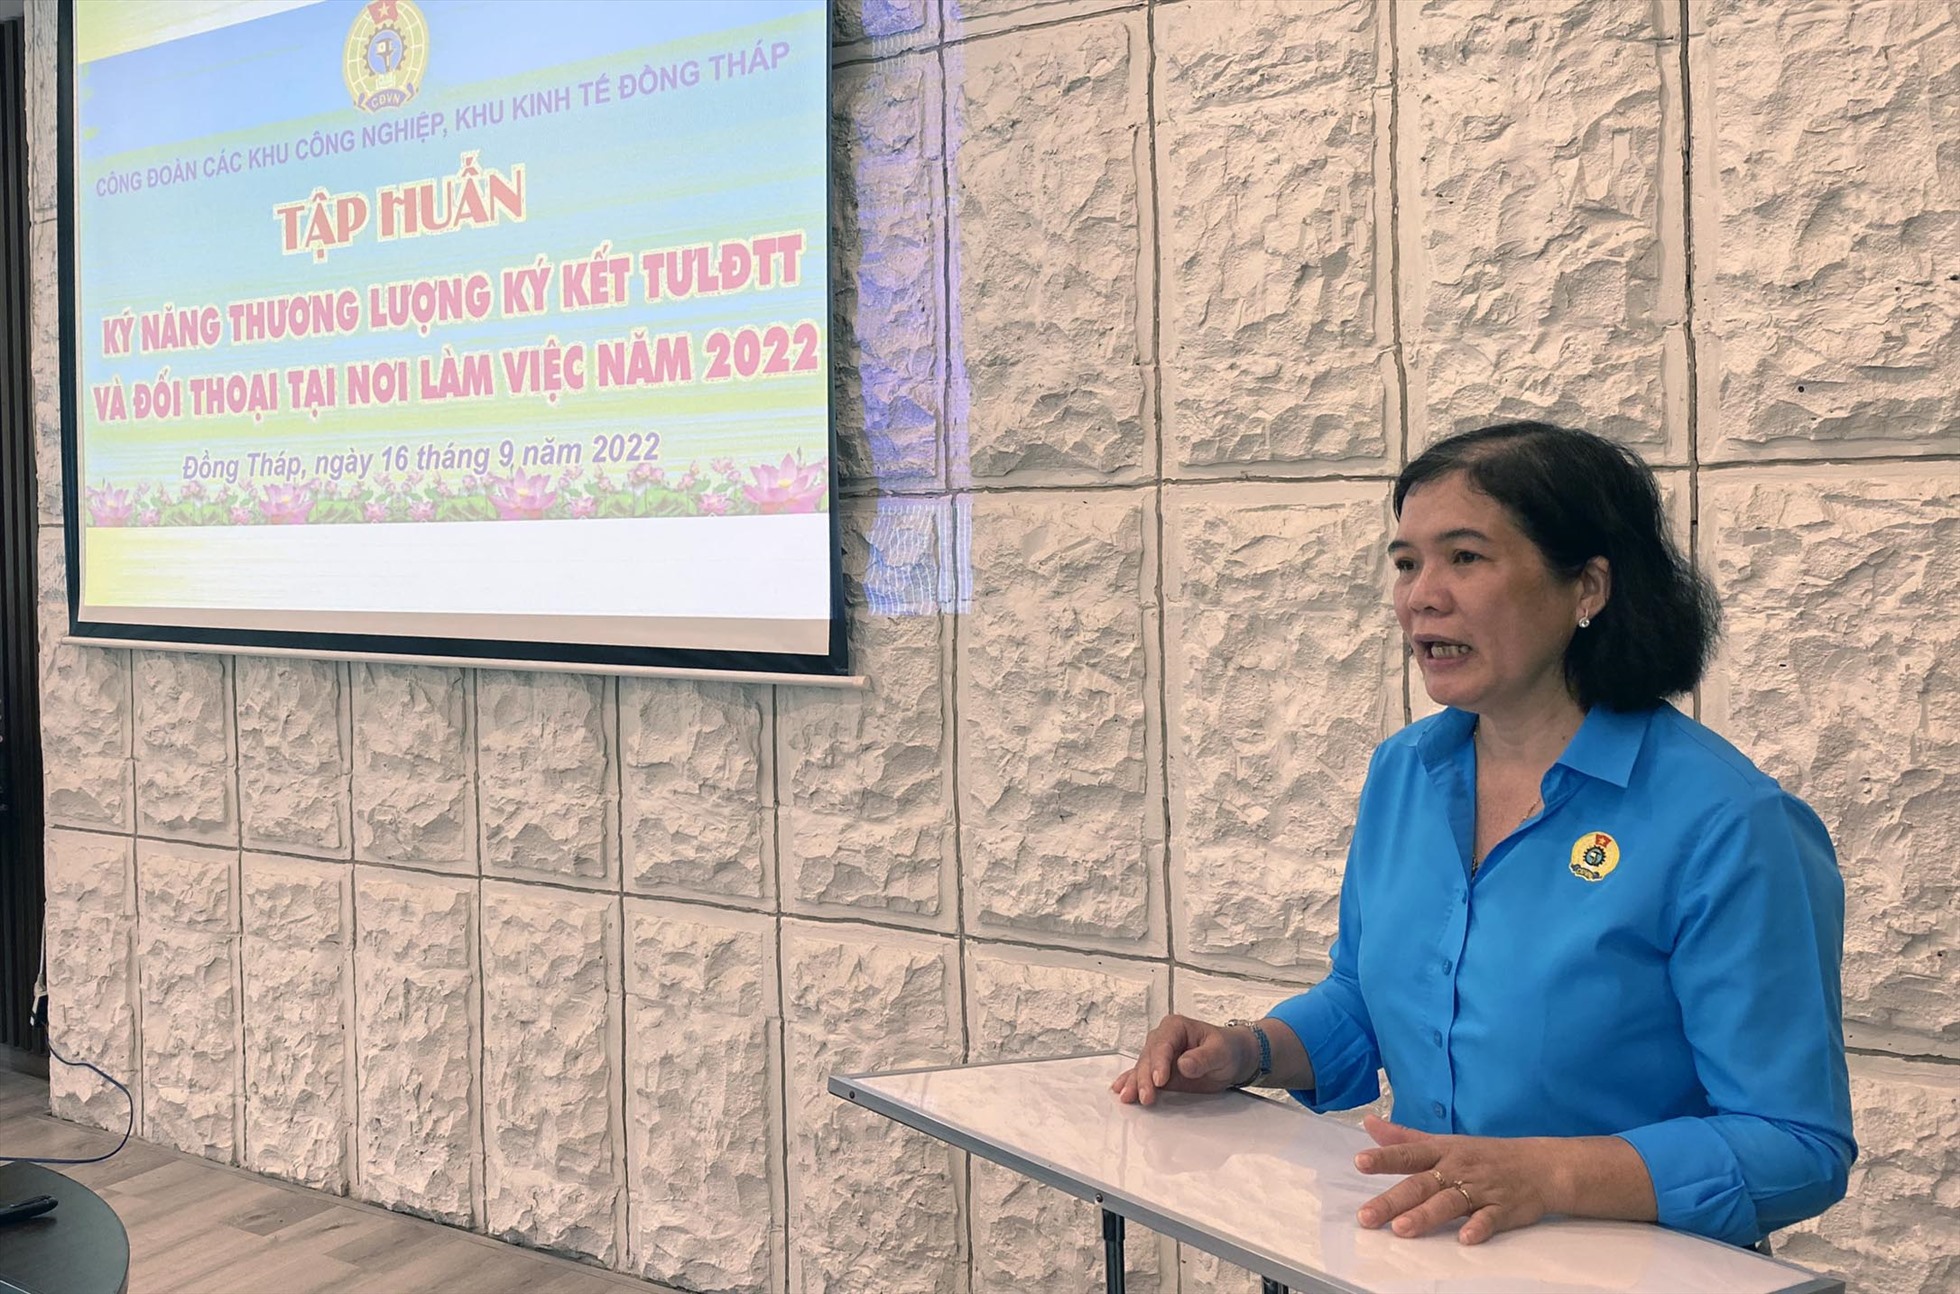 Bà Nguyễn Thị Thủy Tiên, Chủ tịch Công đoàn các khu công nghiệp, khu kinh tế Đồng Tháp phát biểu khai mạc hội nghị tập huấn. Ảnh: TN